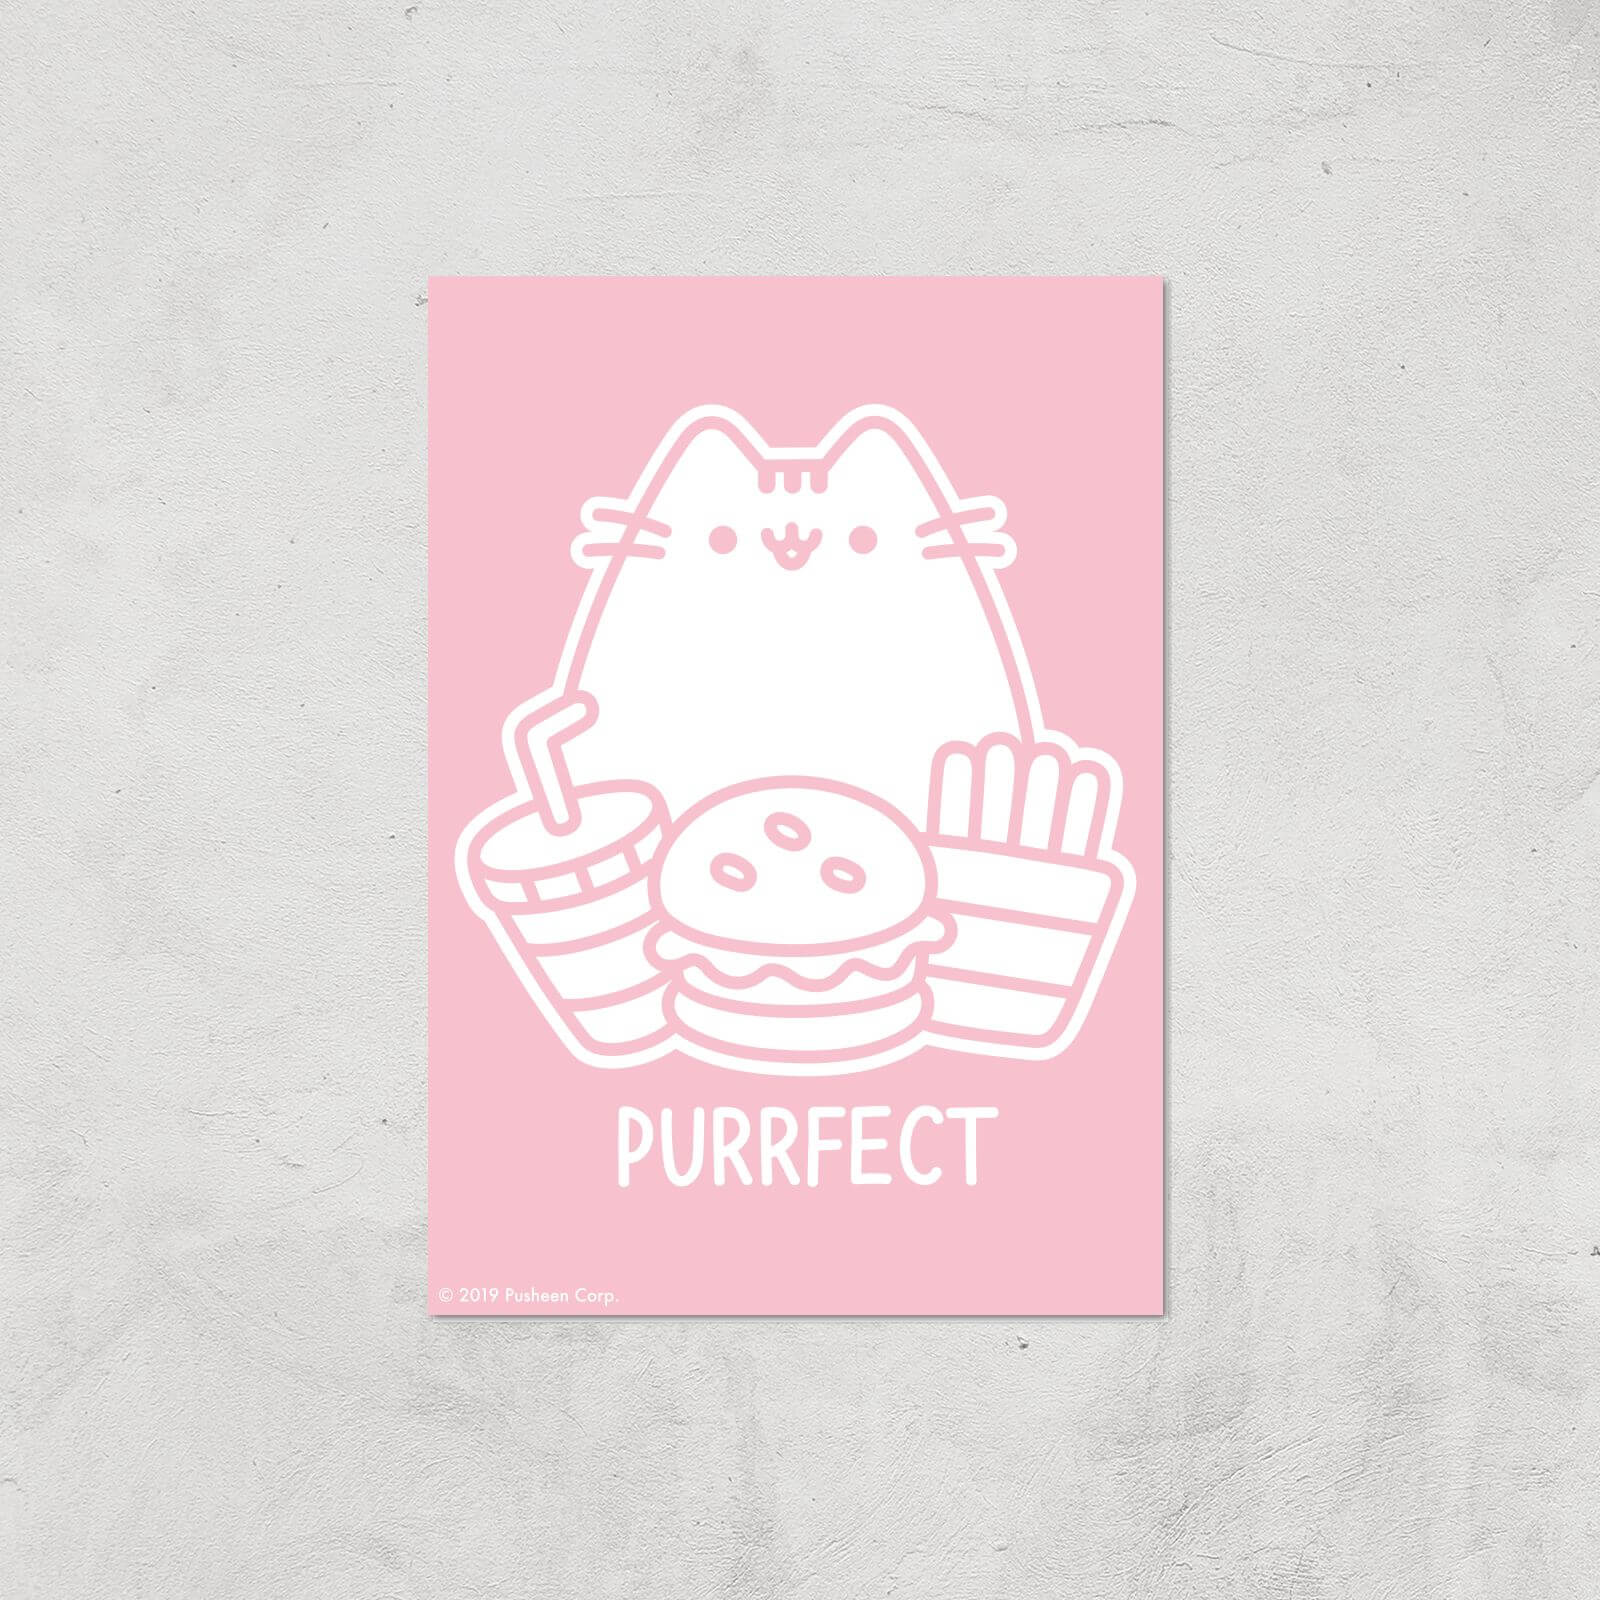 Pusheen Purrfect Junk Food Giclee Art Print - A4 - Print Only